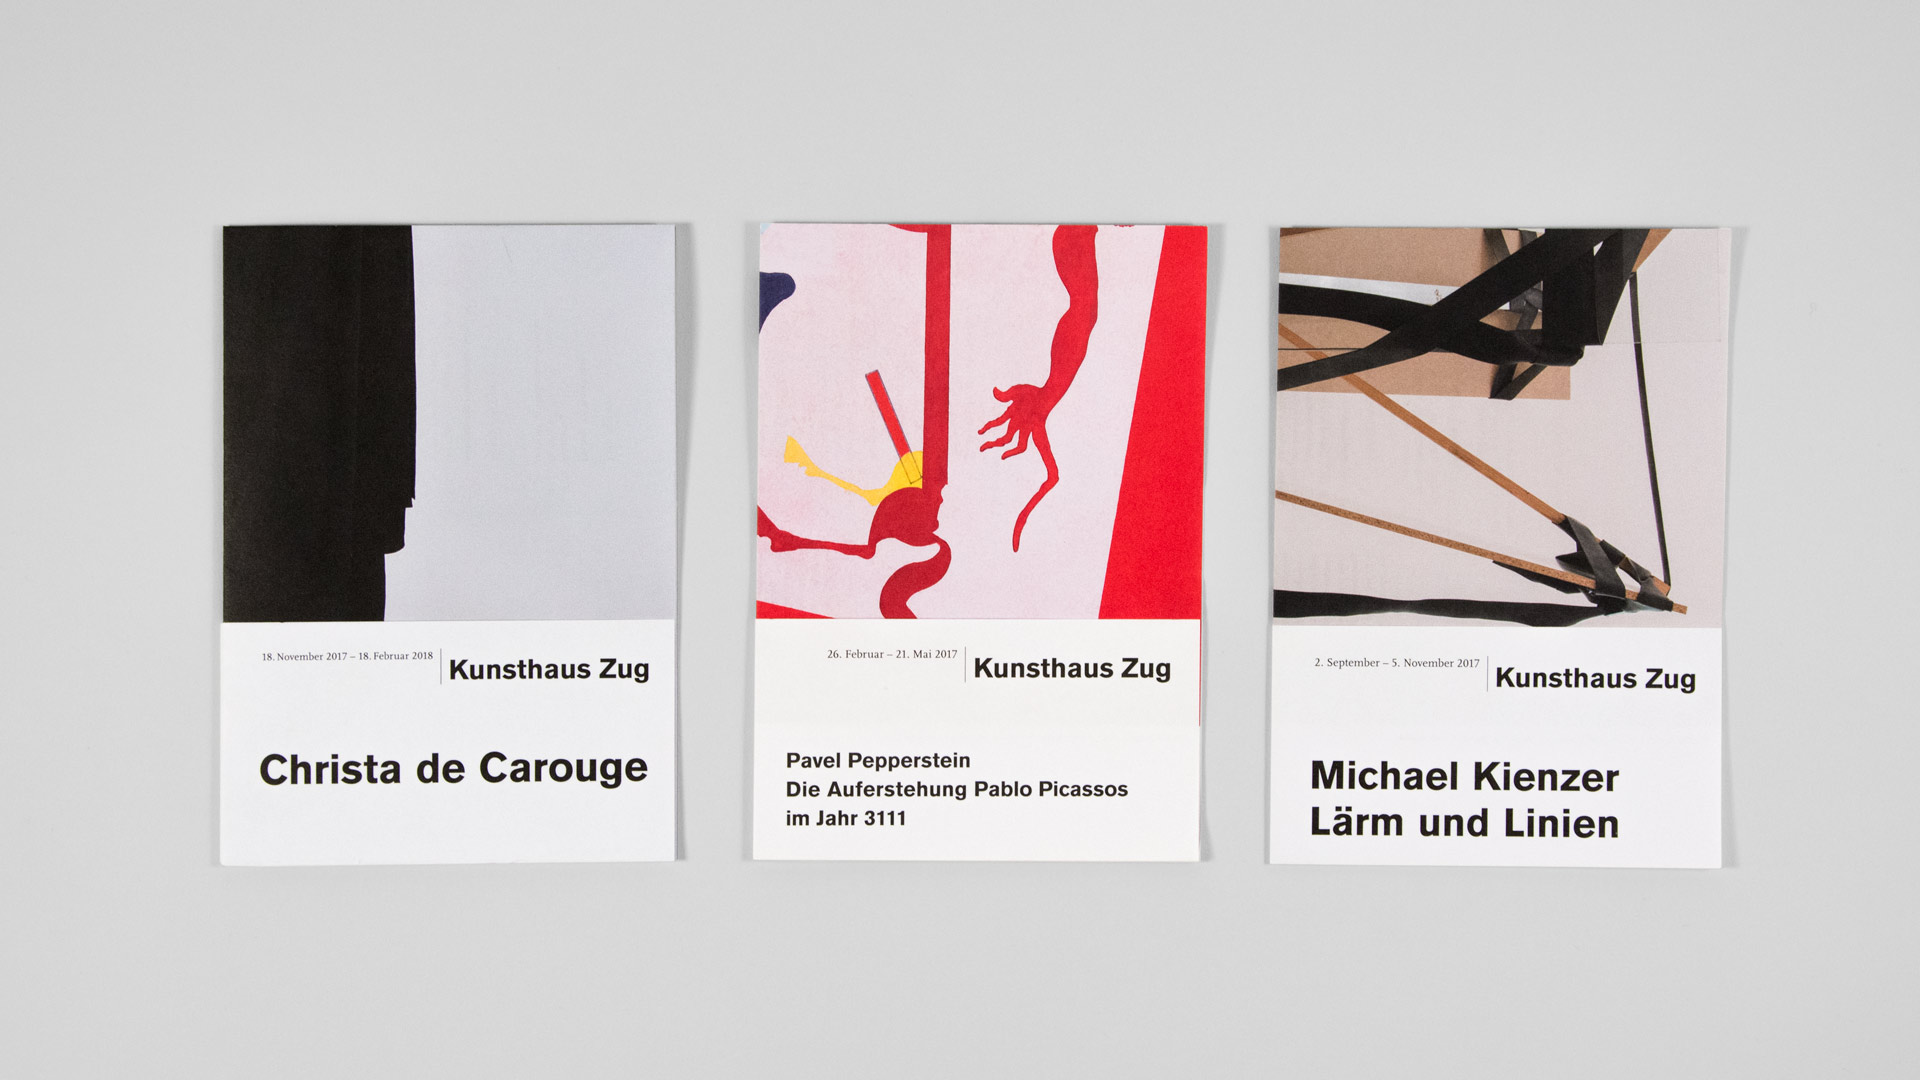 lequipe-visuelle-luzern-emmenbruecke-kunsthaus-zug-corporate-design-editorial-buch-gestaltung